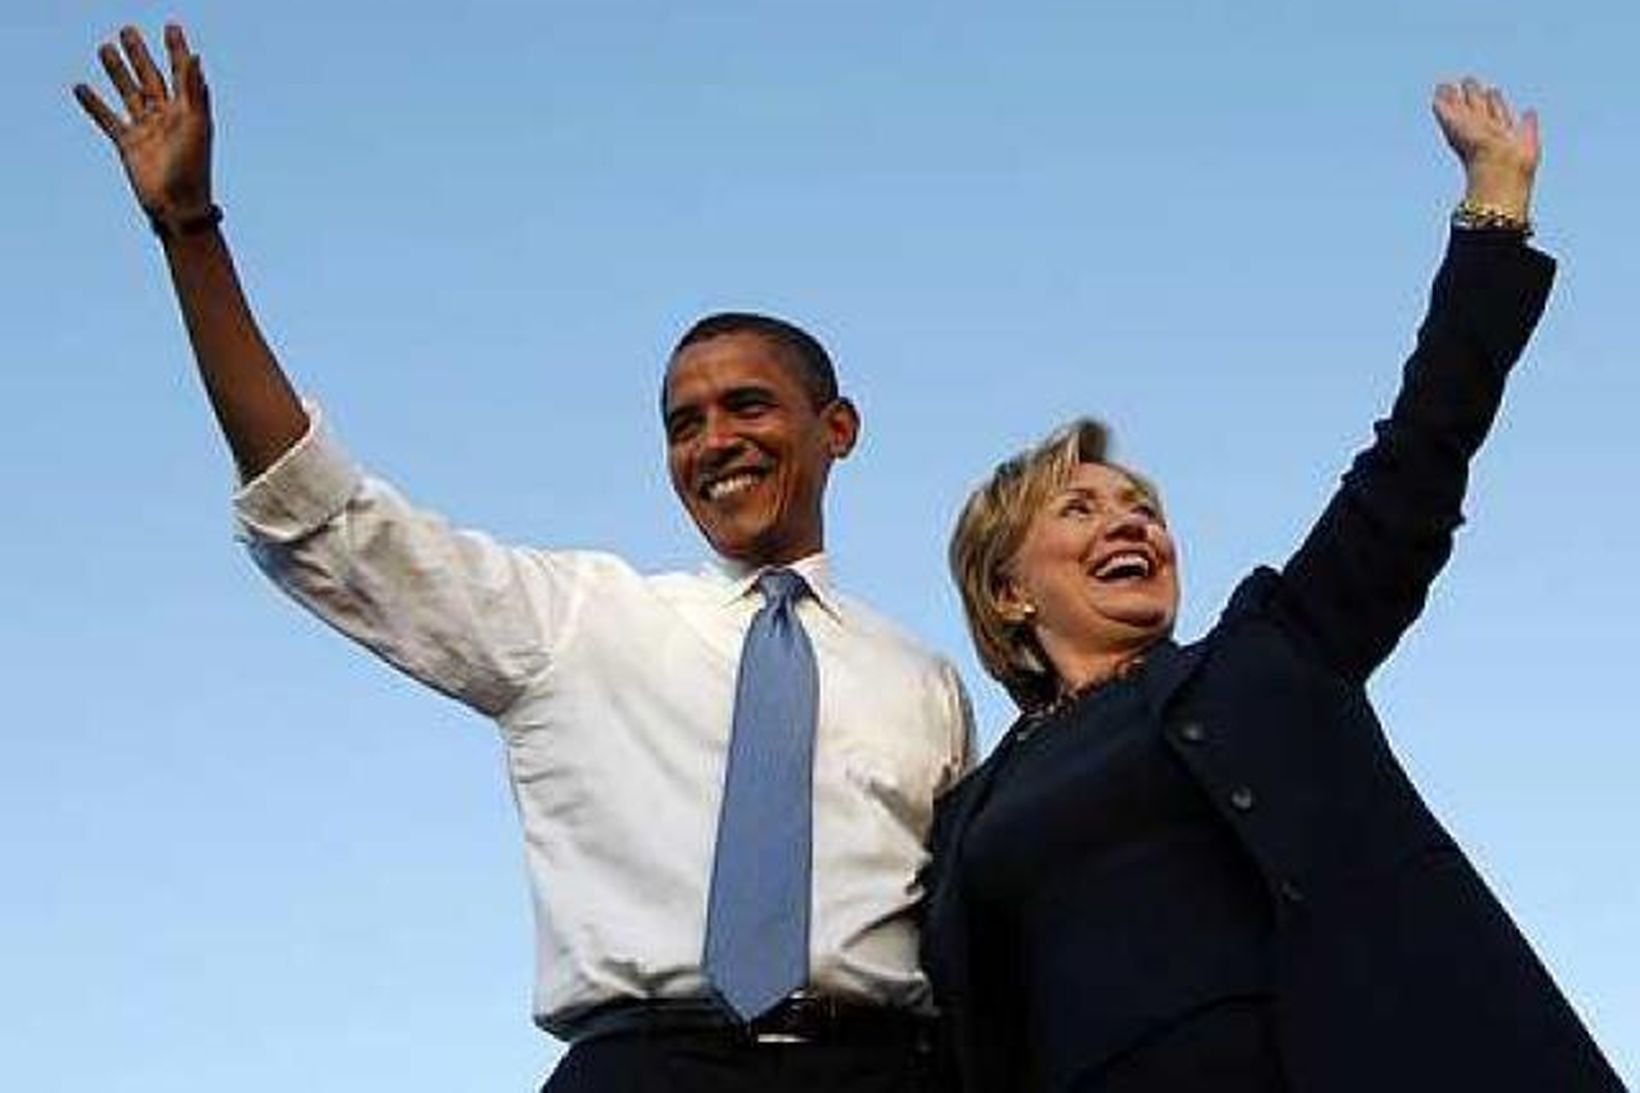 Obama og clinton komu saman á kosninga fundi í Florida.